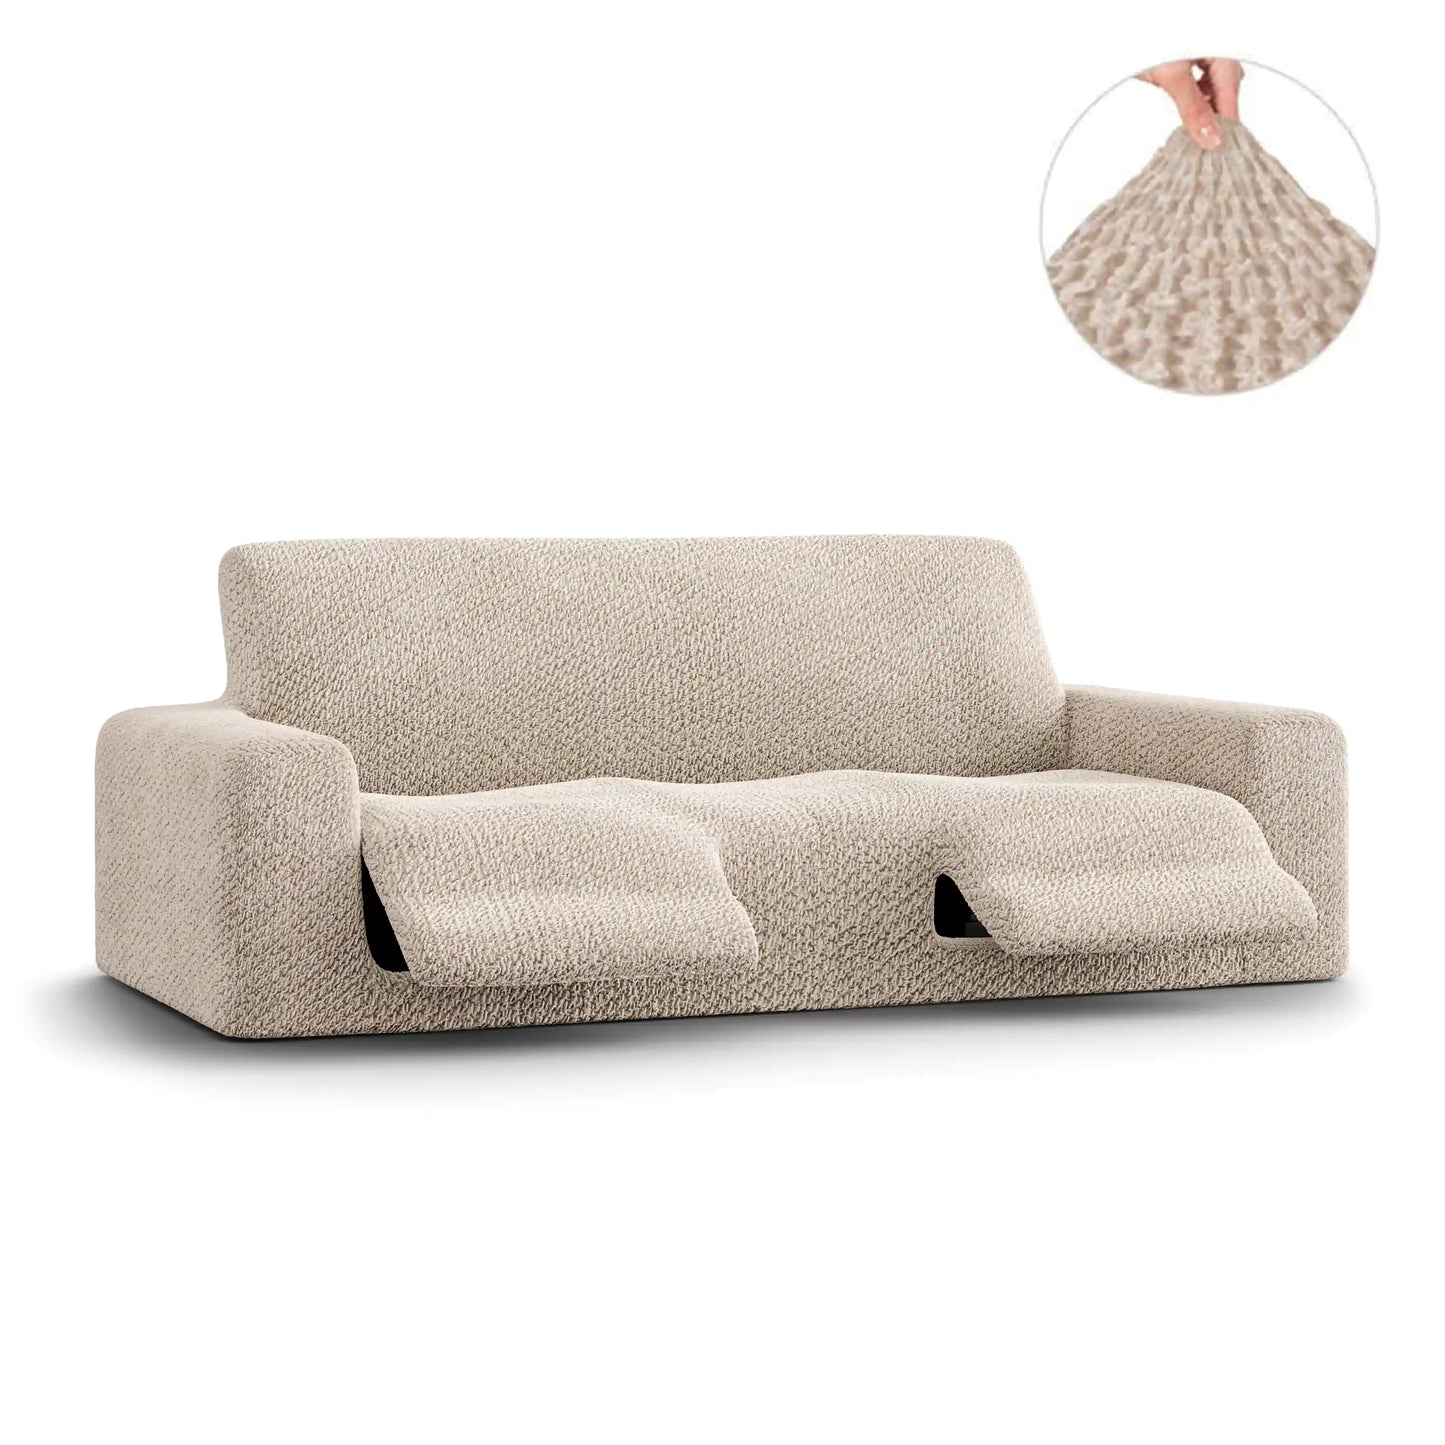 3 Seater Recliner Sofa Cover - Beige, Velvet